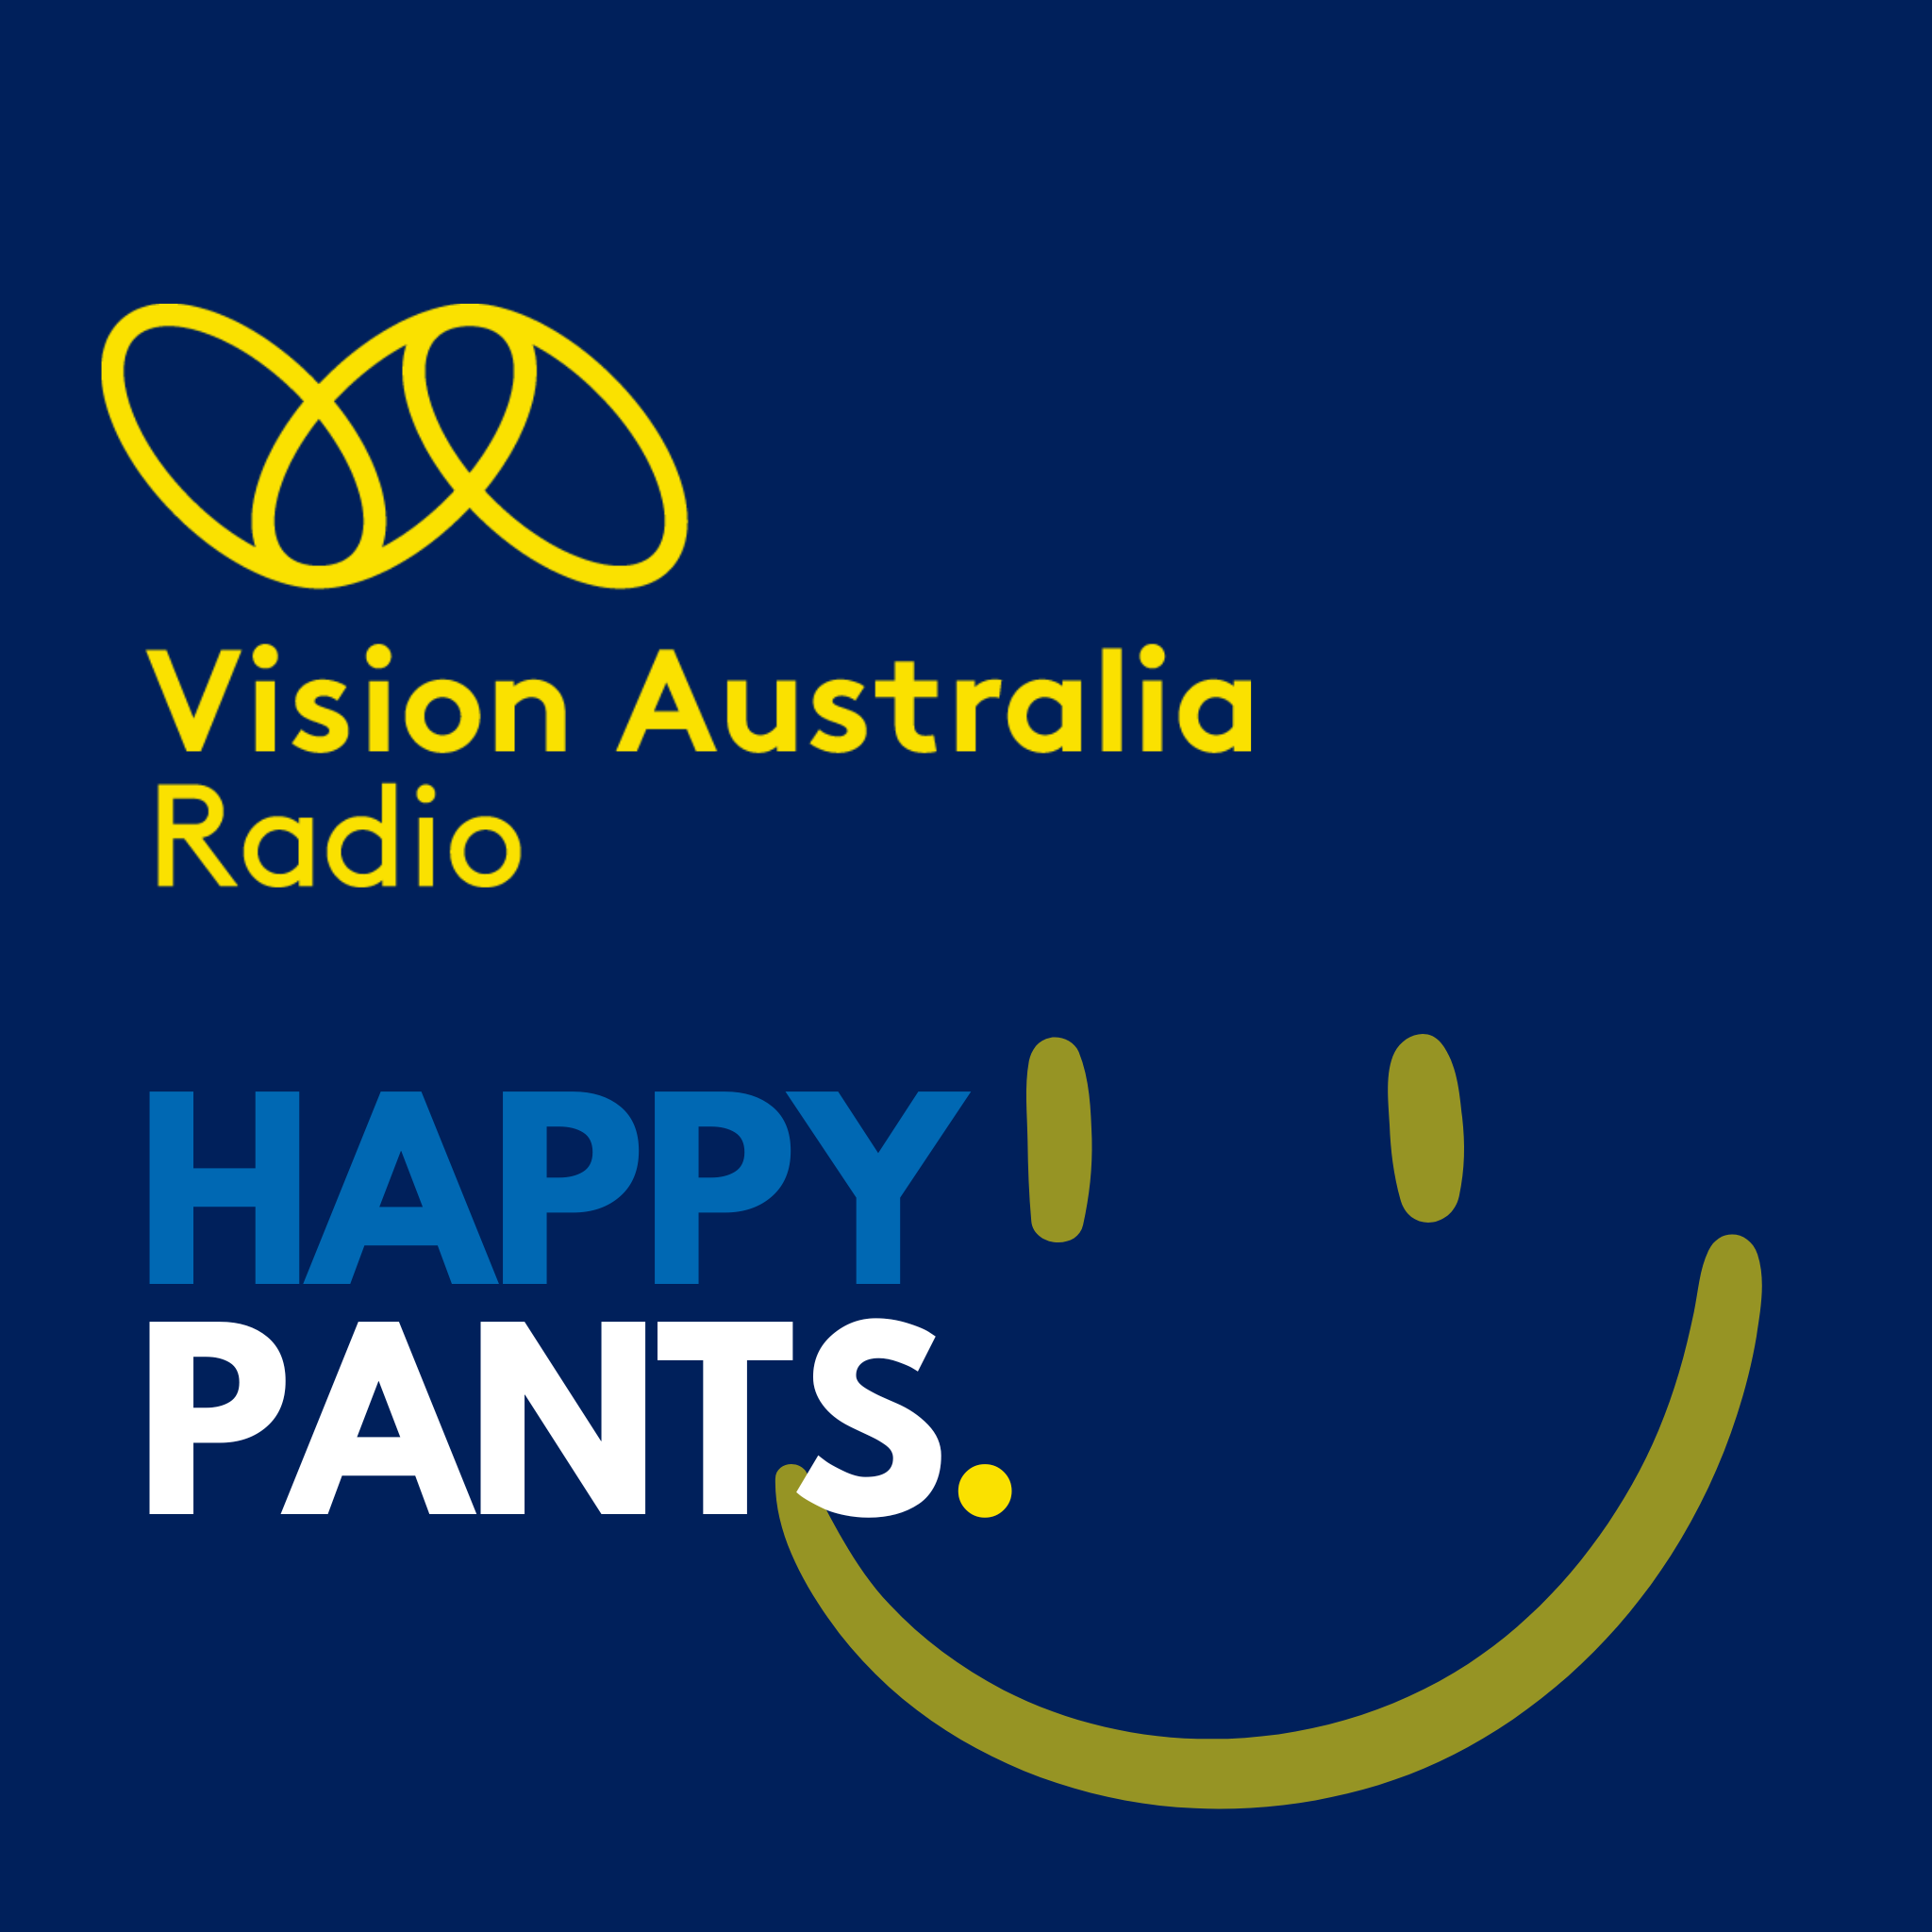 Happy Pants - January 13